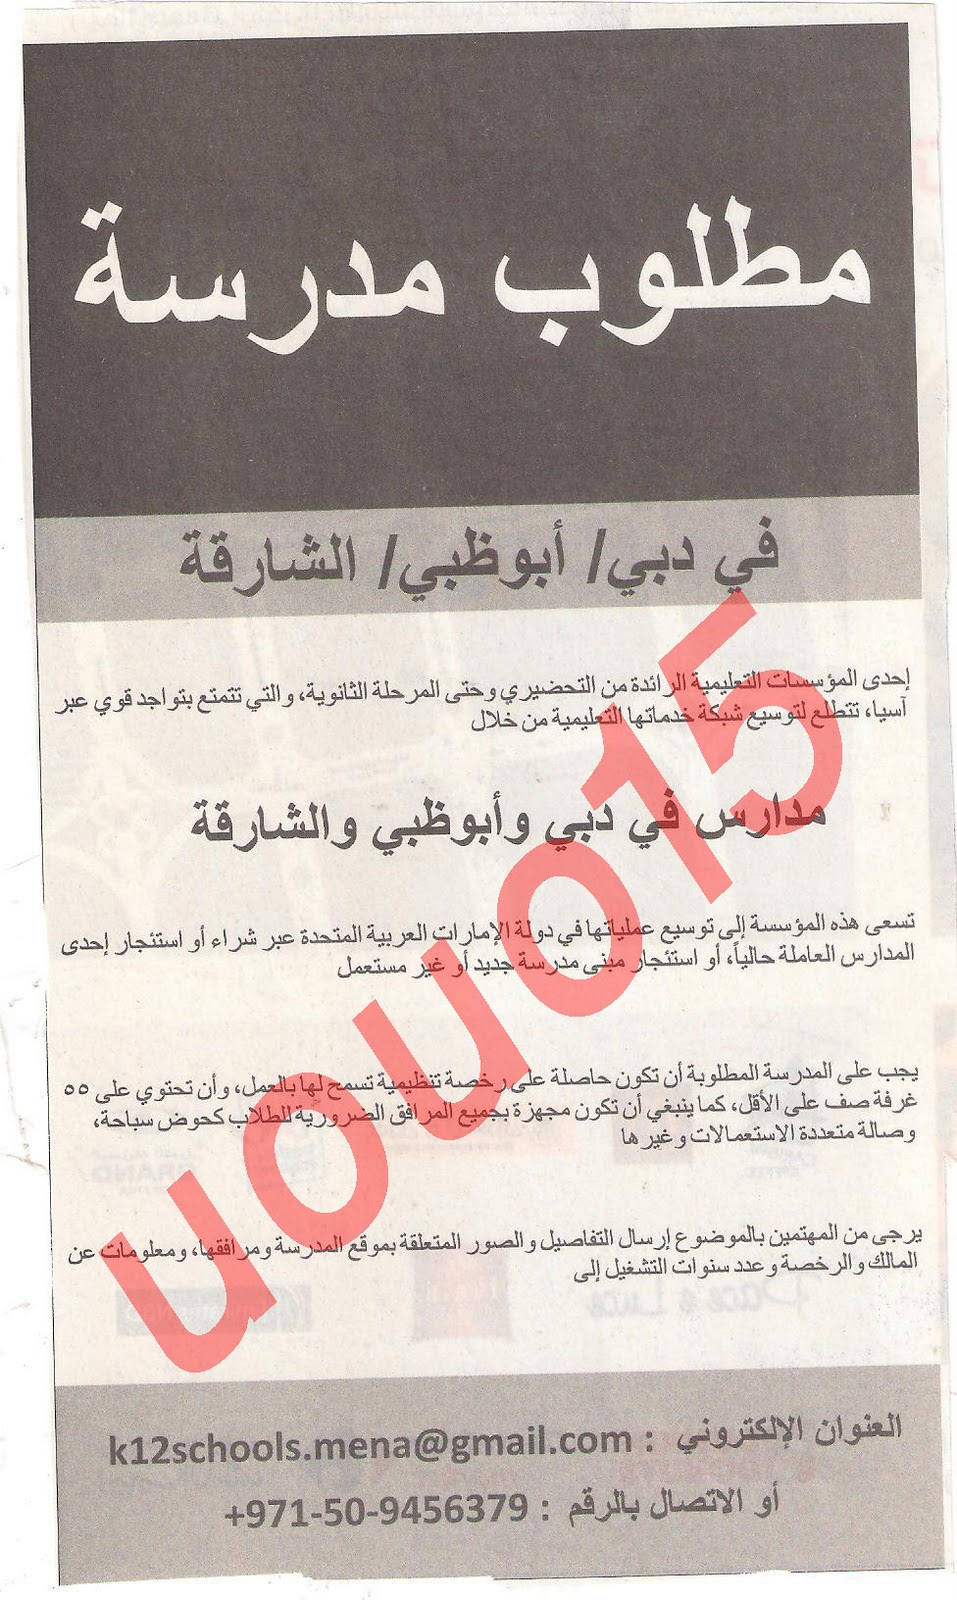 وظائف شاغرة من جريدة الخليج الجمعة 9\12\2011  Picture+035